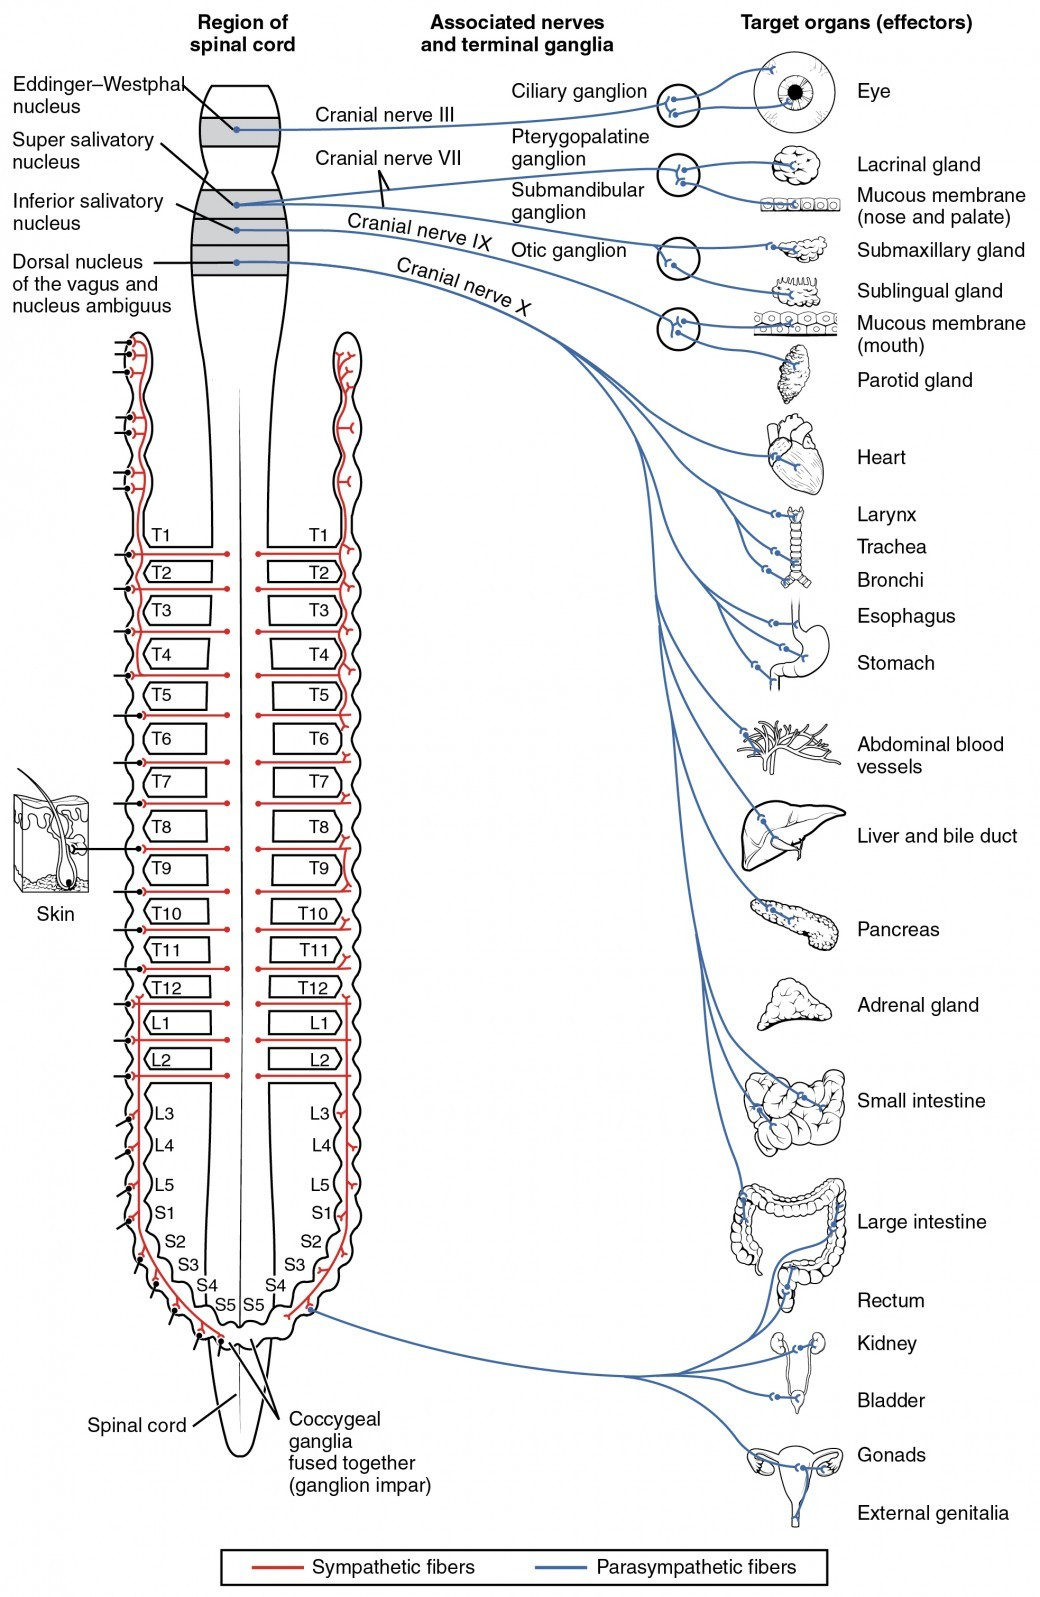 Central Nervous System Coloring Pages Elegant Central Nervous System Coloring Pages Lovespells